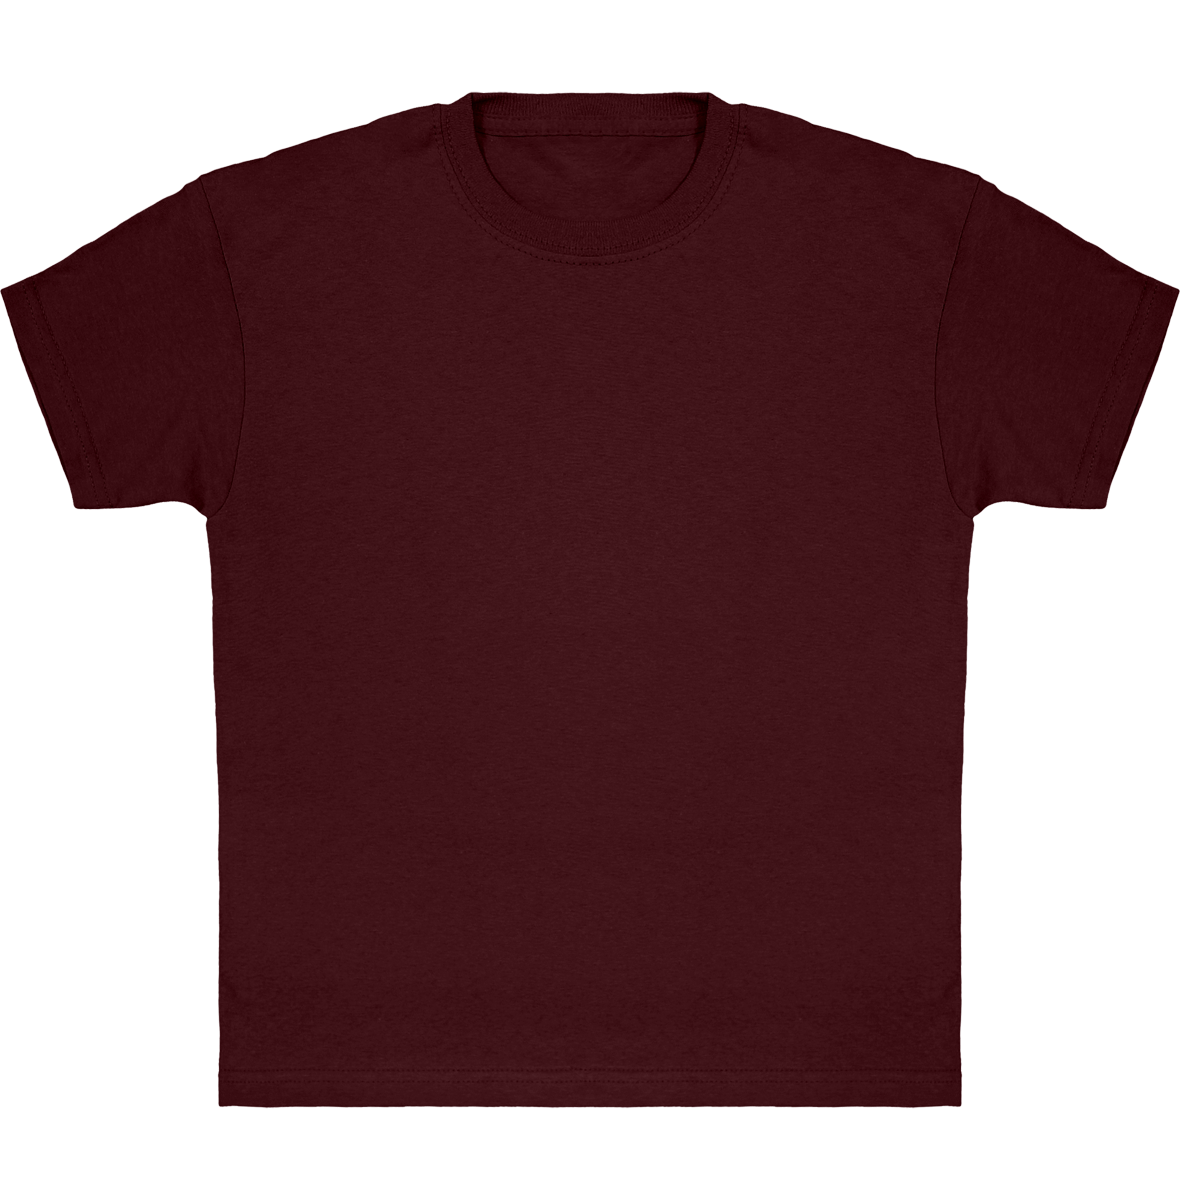 Camiseta Clásica De Niño Personalizada En Algodón 100% Burgundy